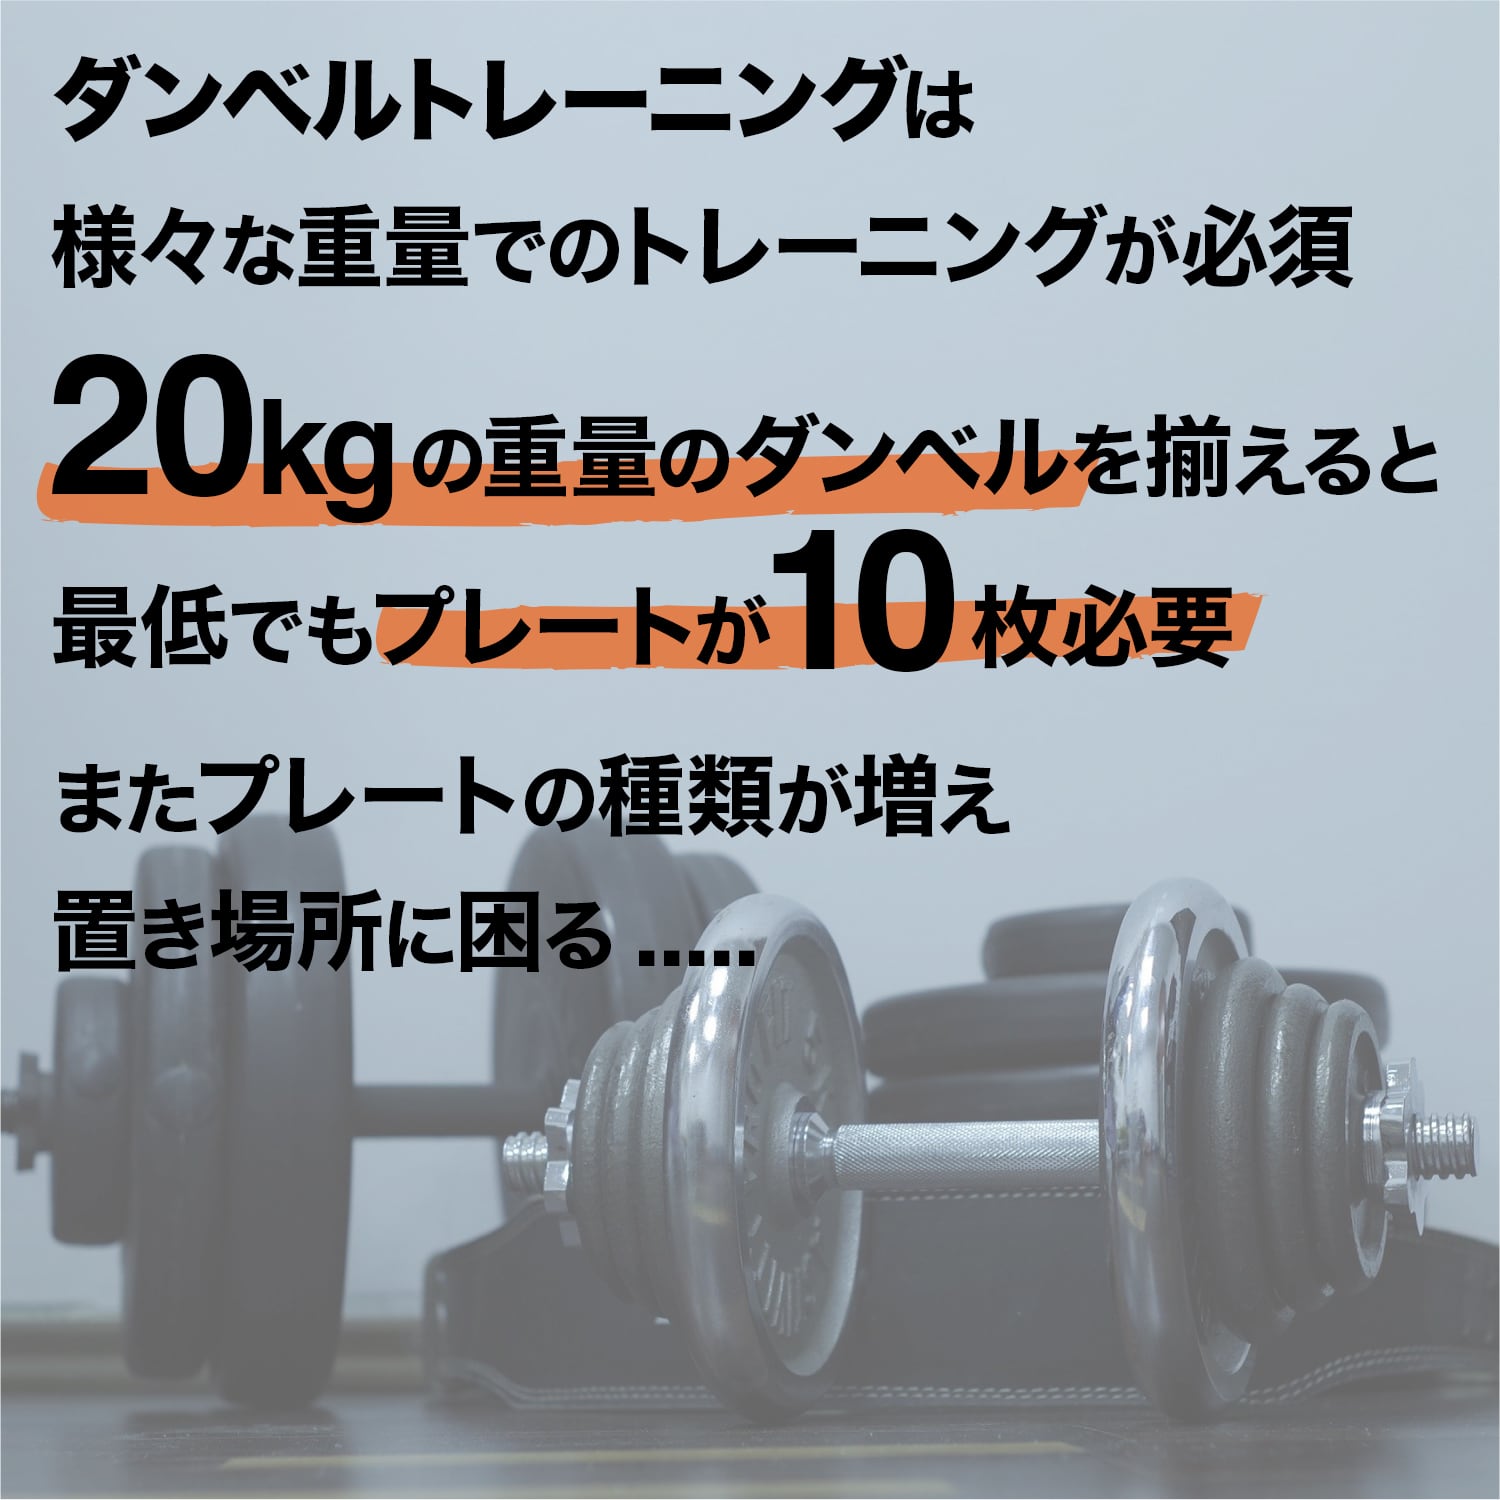 可変式ダンベル 5kg~26kg 2個セット | MRG JAPAN Direct powered by BASE